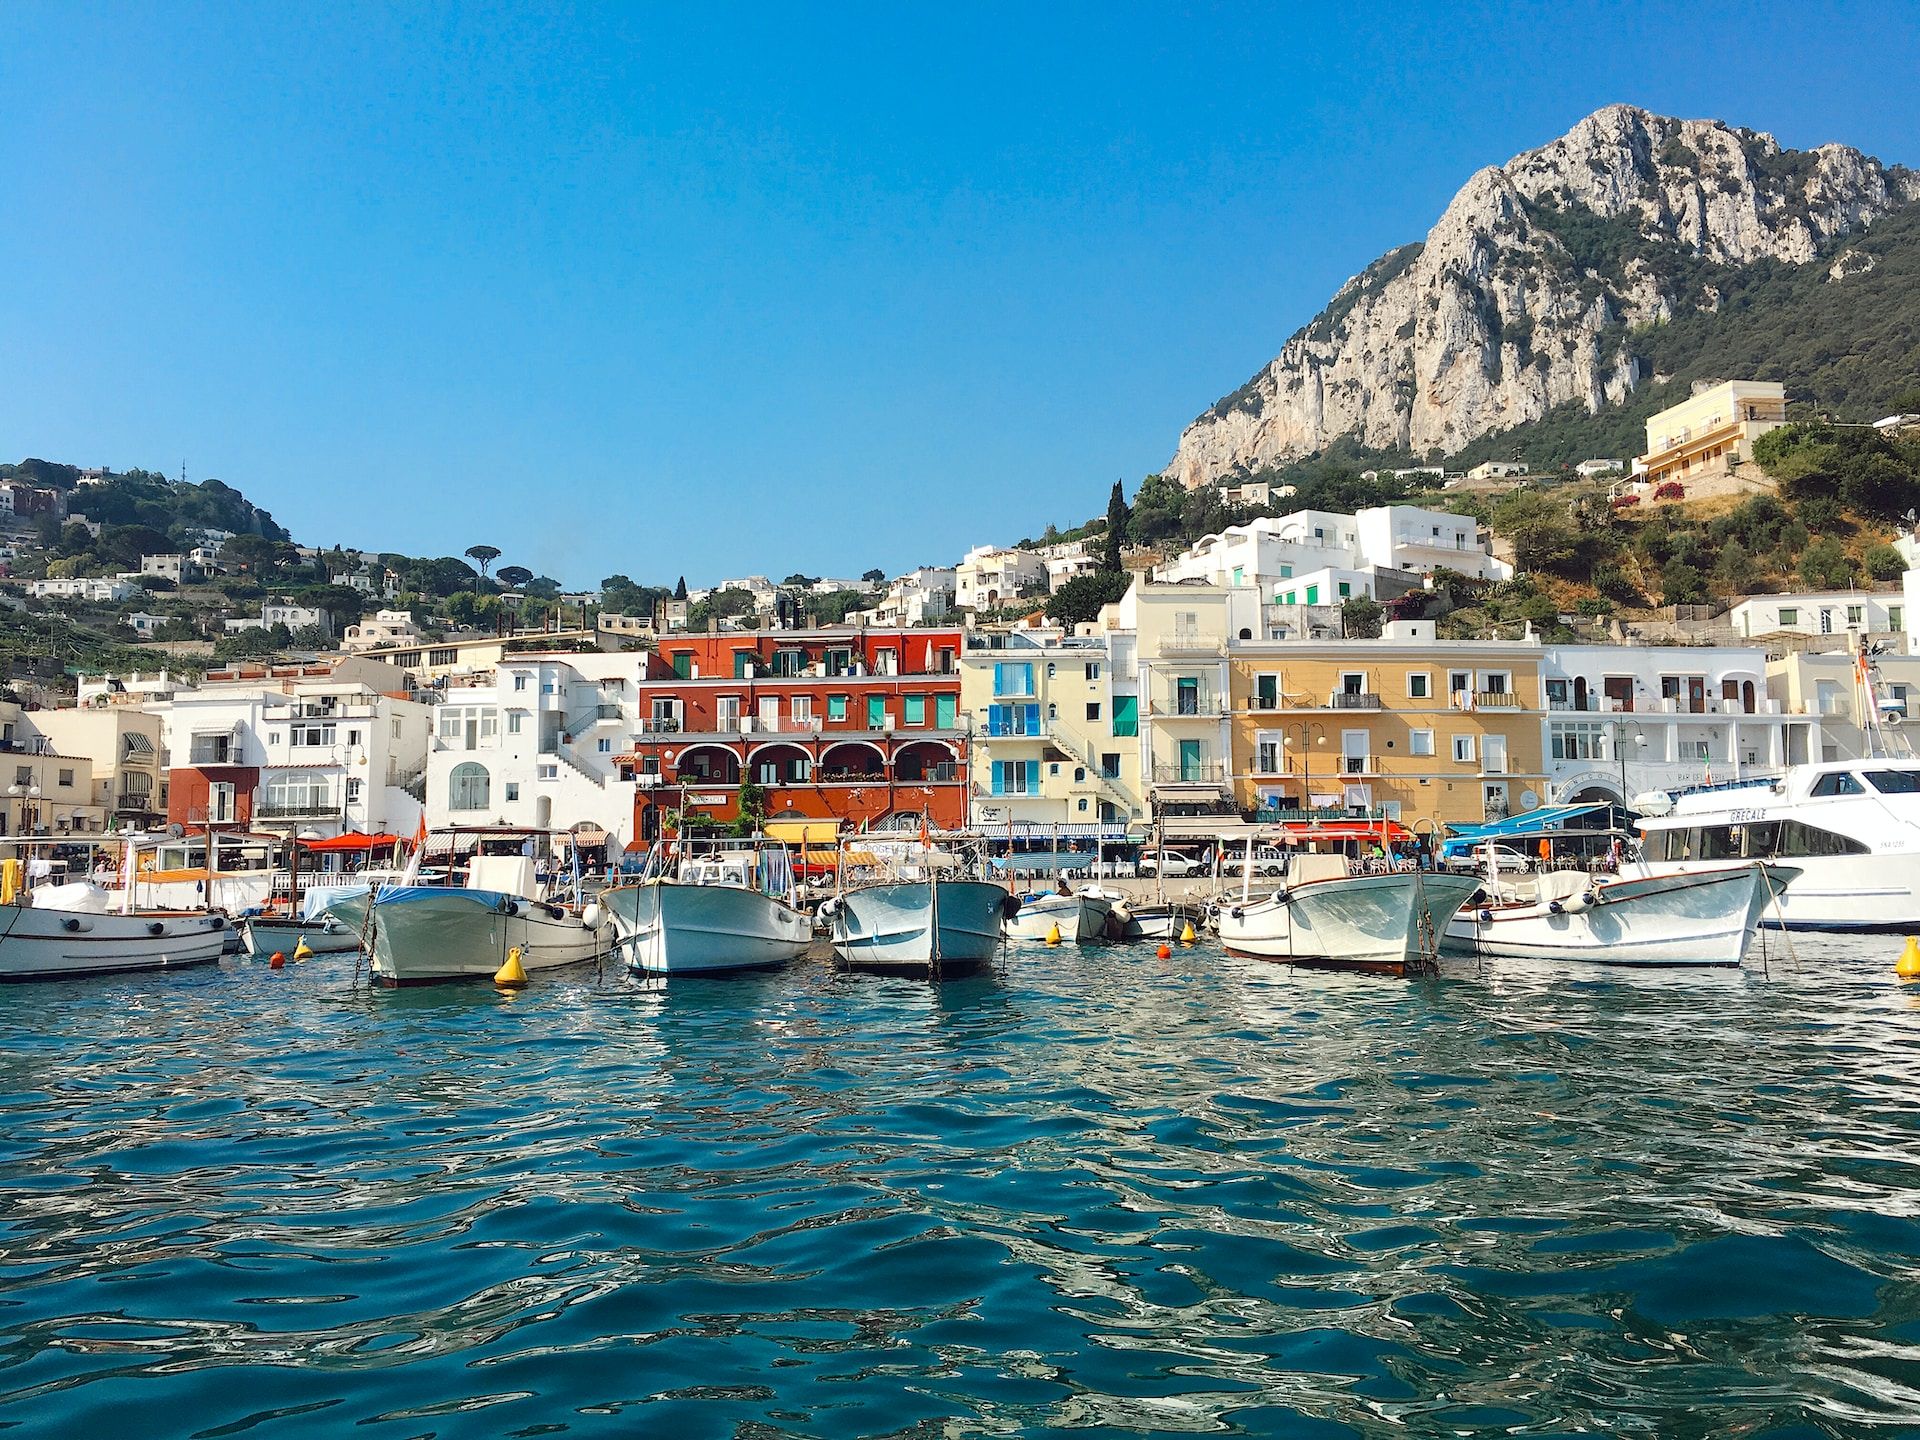 View of Capri's beautiful harbor